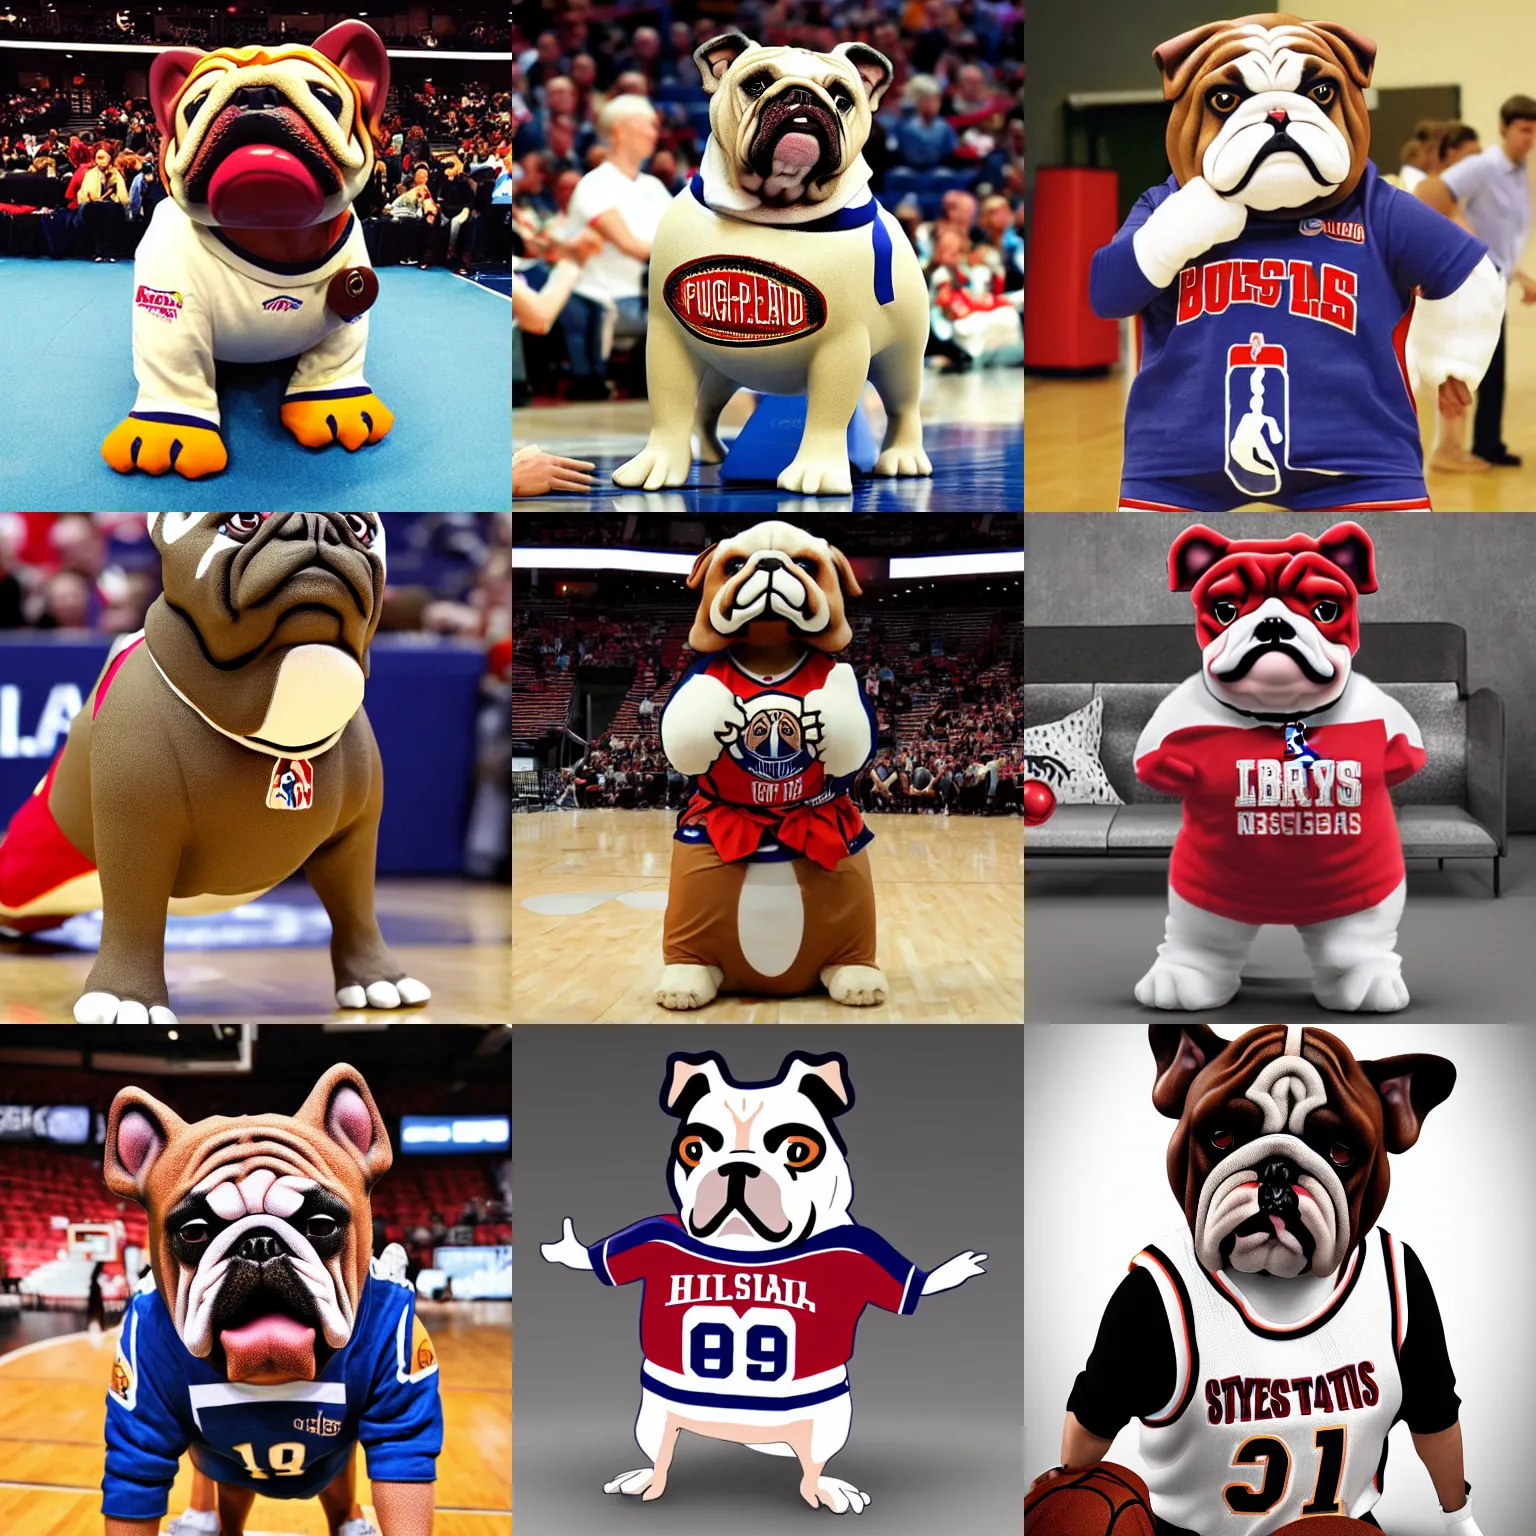 Prompt: NBA style bulldog mascot